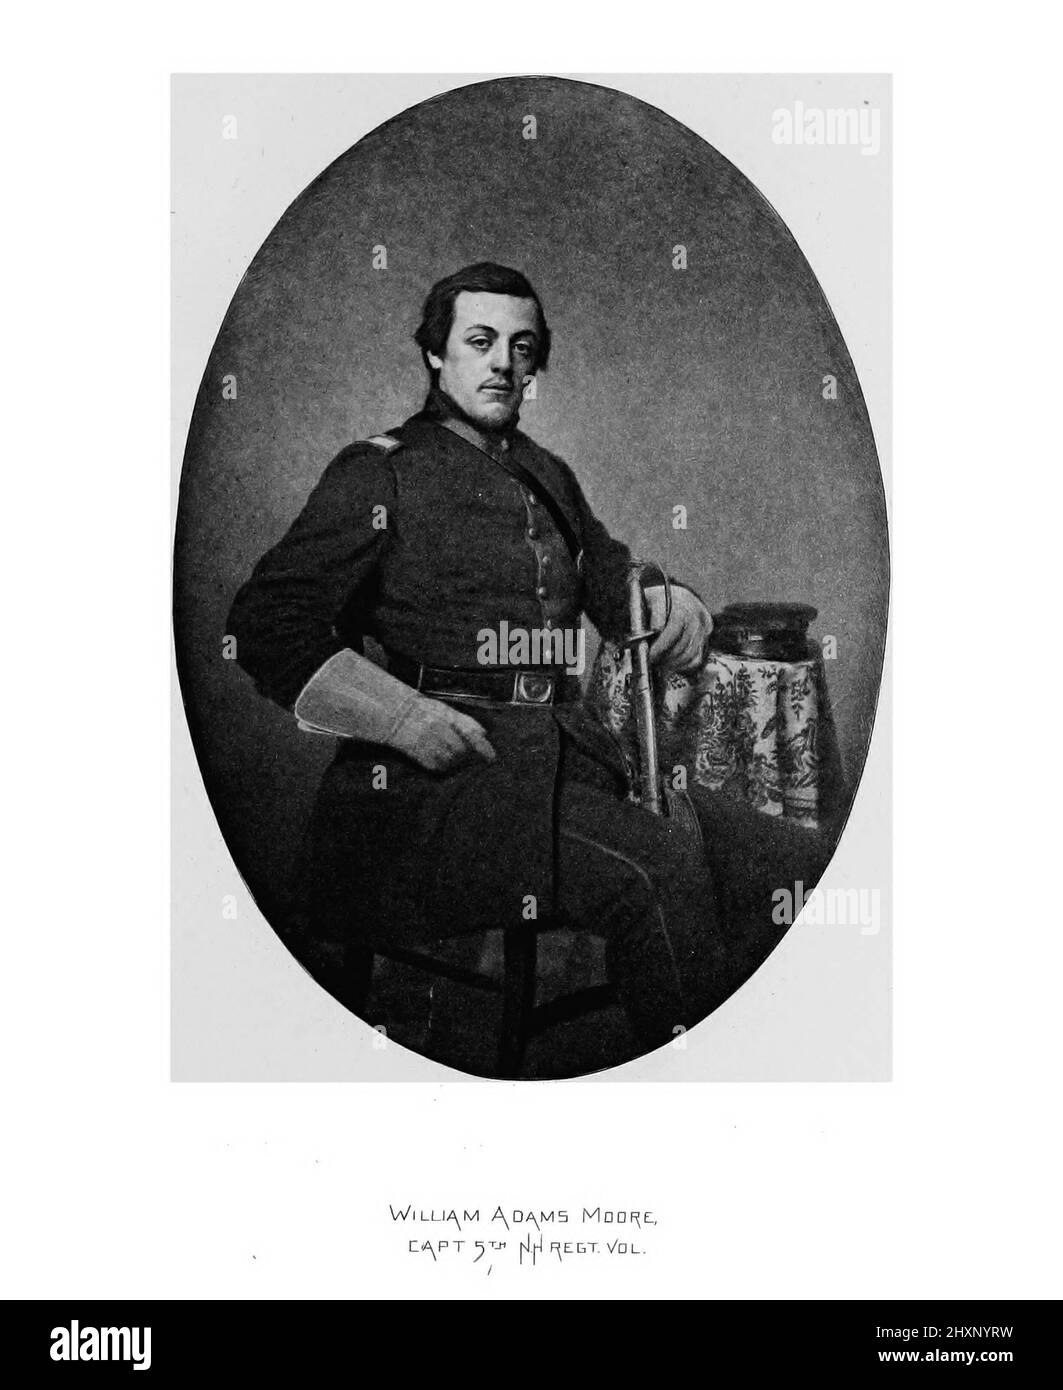 Capitaine William Adams Moore Portrait du livre « A history of the Fifth Regiment, New Hampshire volontaires, in the American civil War, 1861-1865 » de William Child, publié en 1893 Banque D'Images